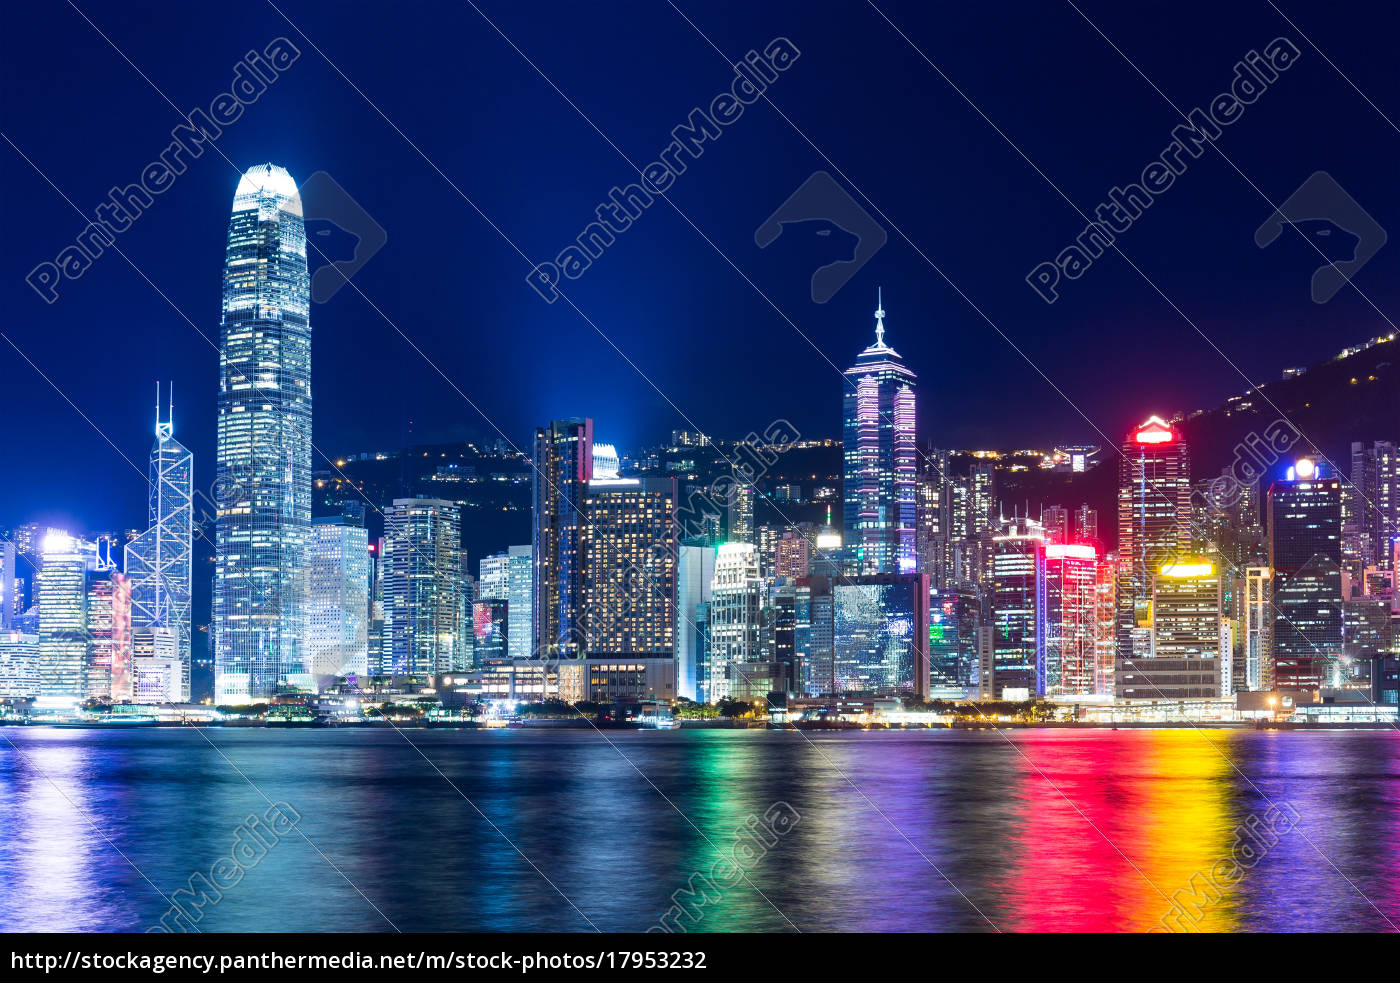 HKA100 Travel Photography Photo Print Details about   Hong Kong at Night